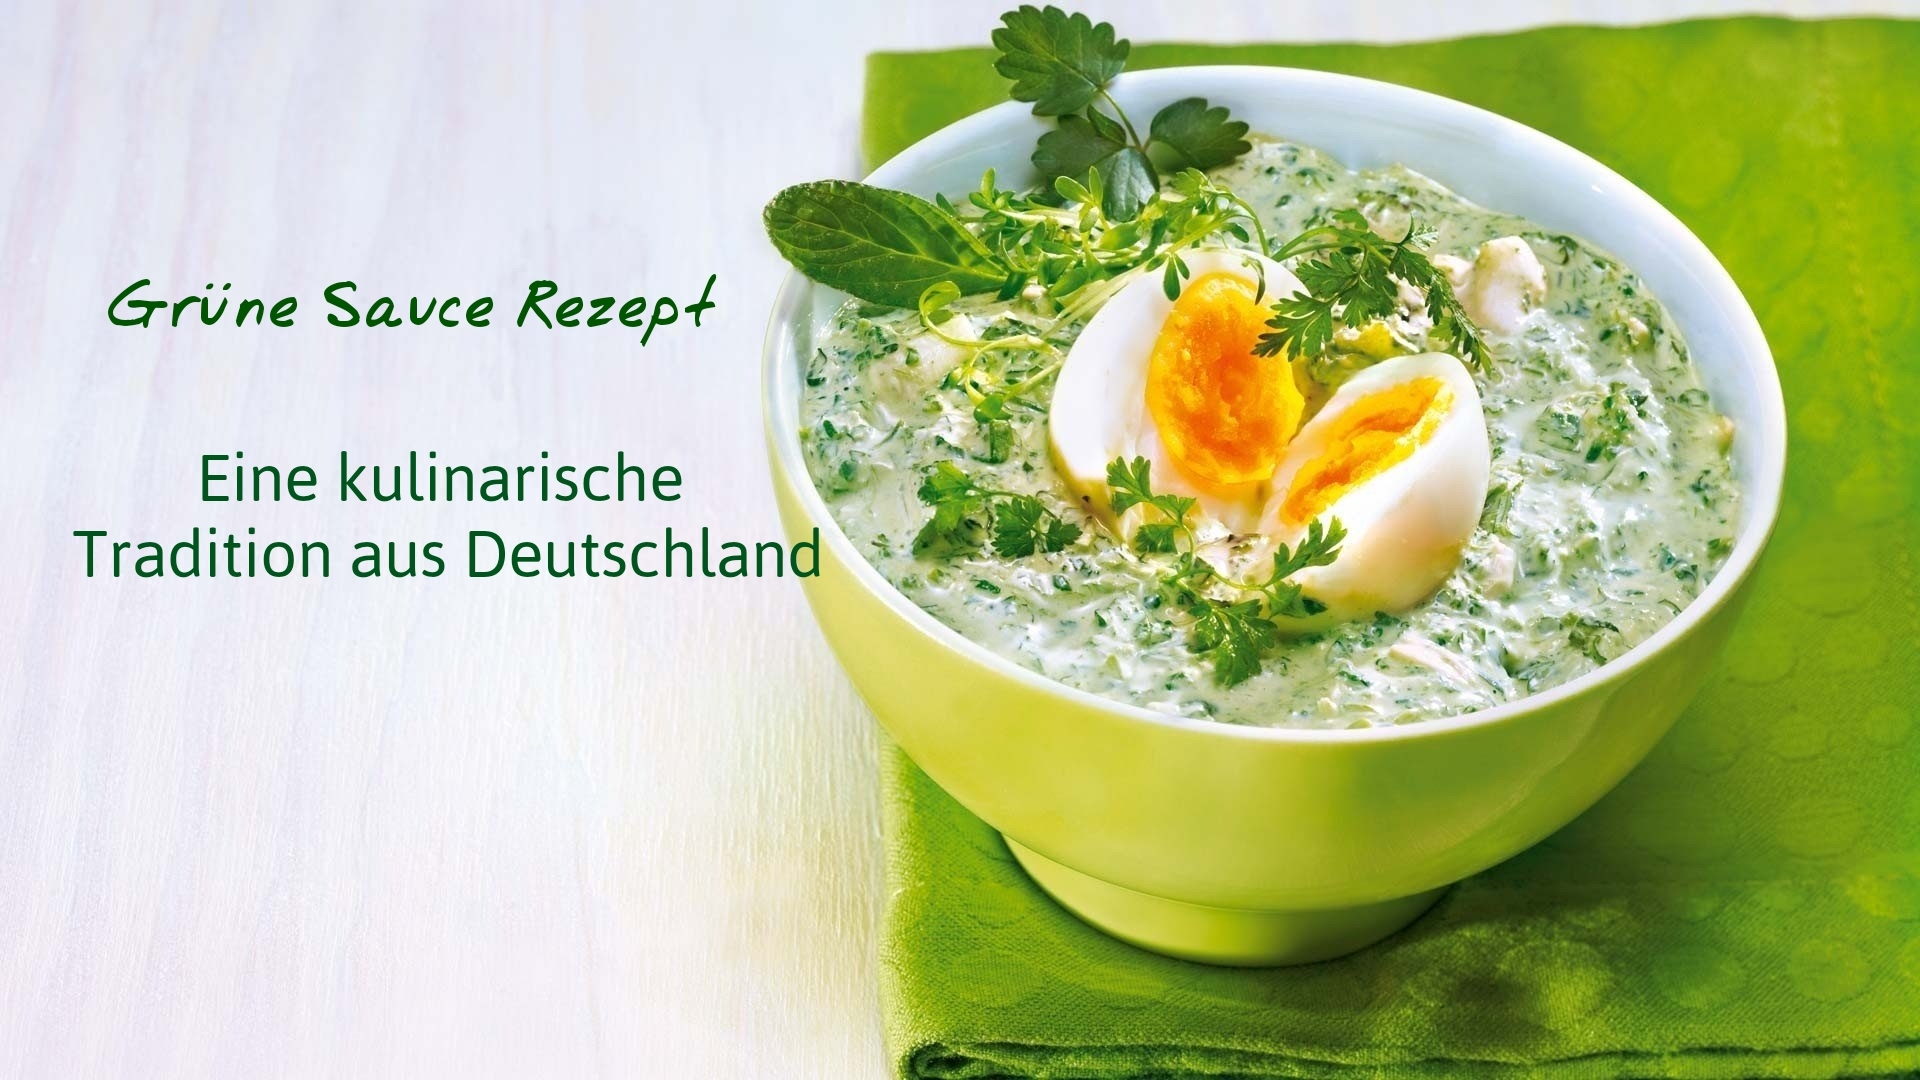 Grüne Sauce Rezept- Eine kulinarische Tradition aus Deutschland